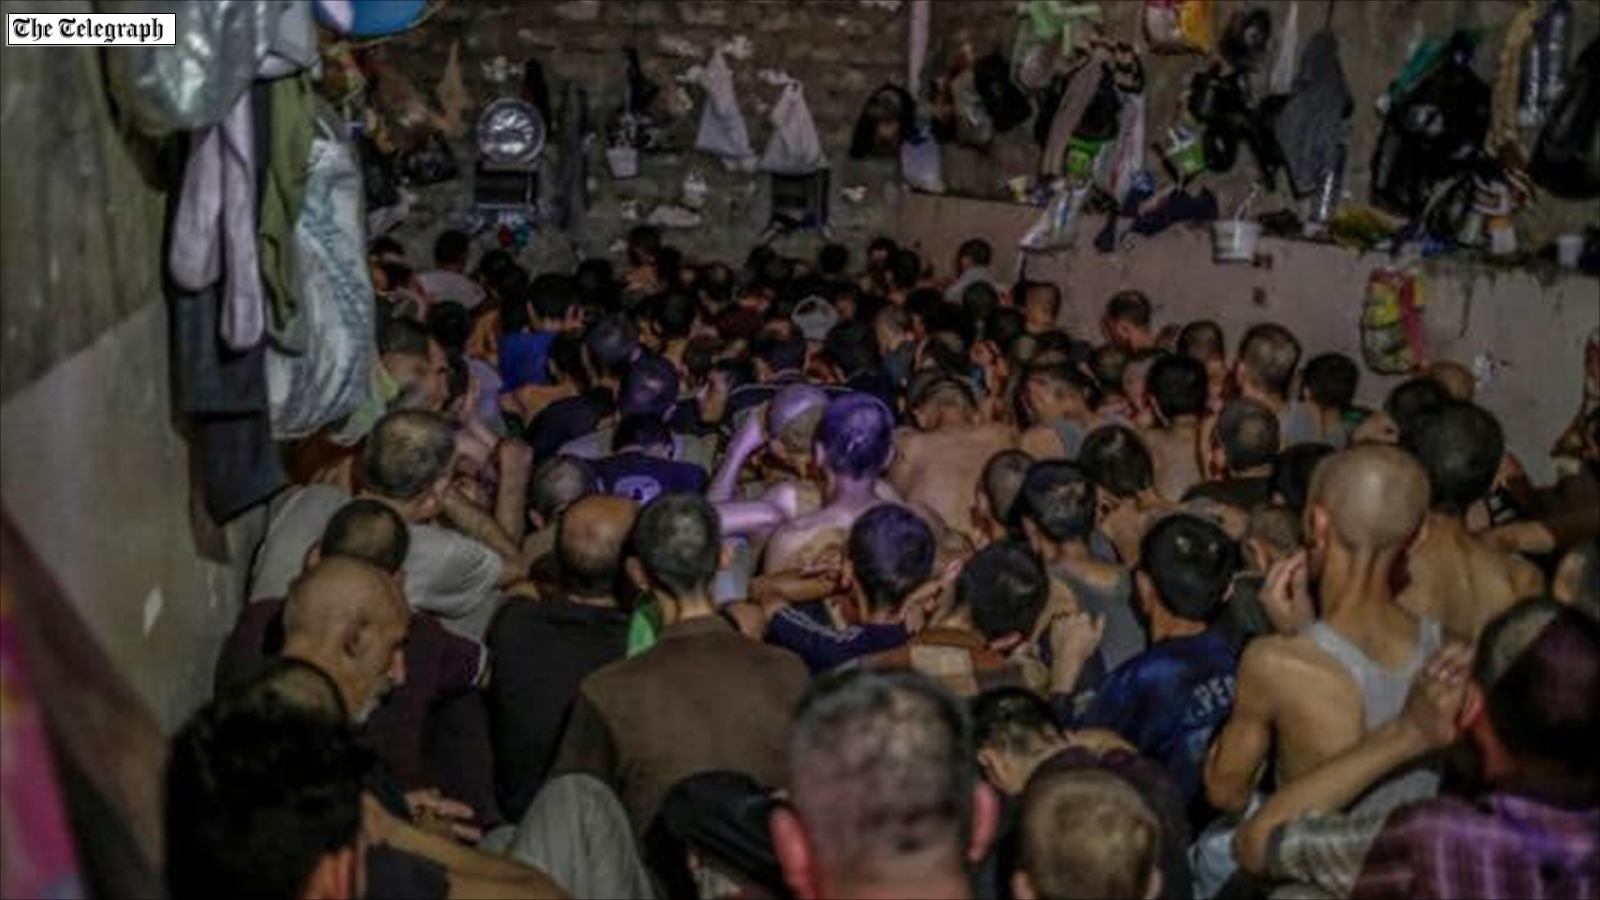 العشرات من المعتقلين في غرفة صغيرة بسجن في الموصل بتهمة الانتماء لتنظيم الدولة (أسوشيتد برس-أرشيف)